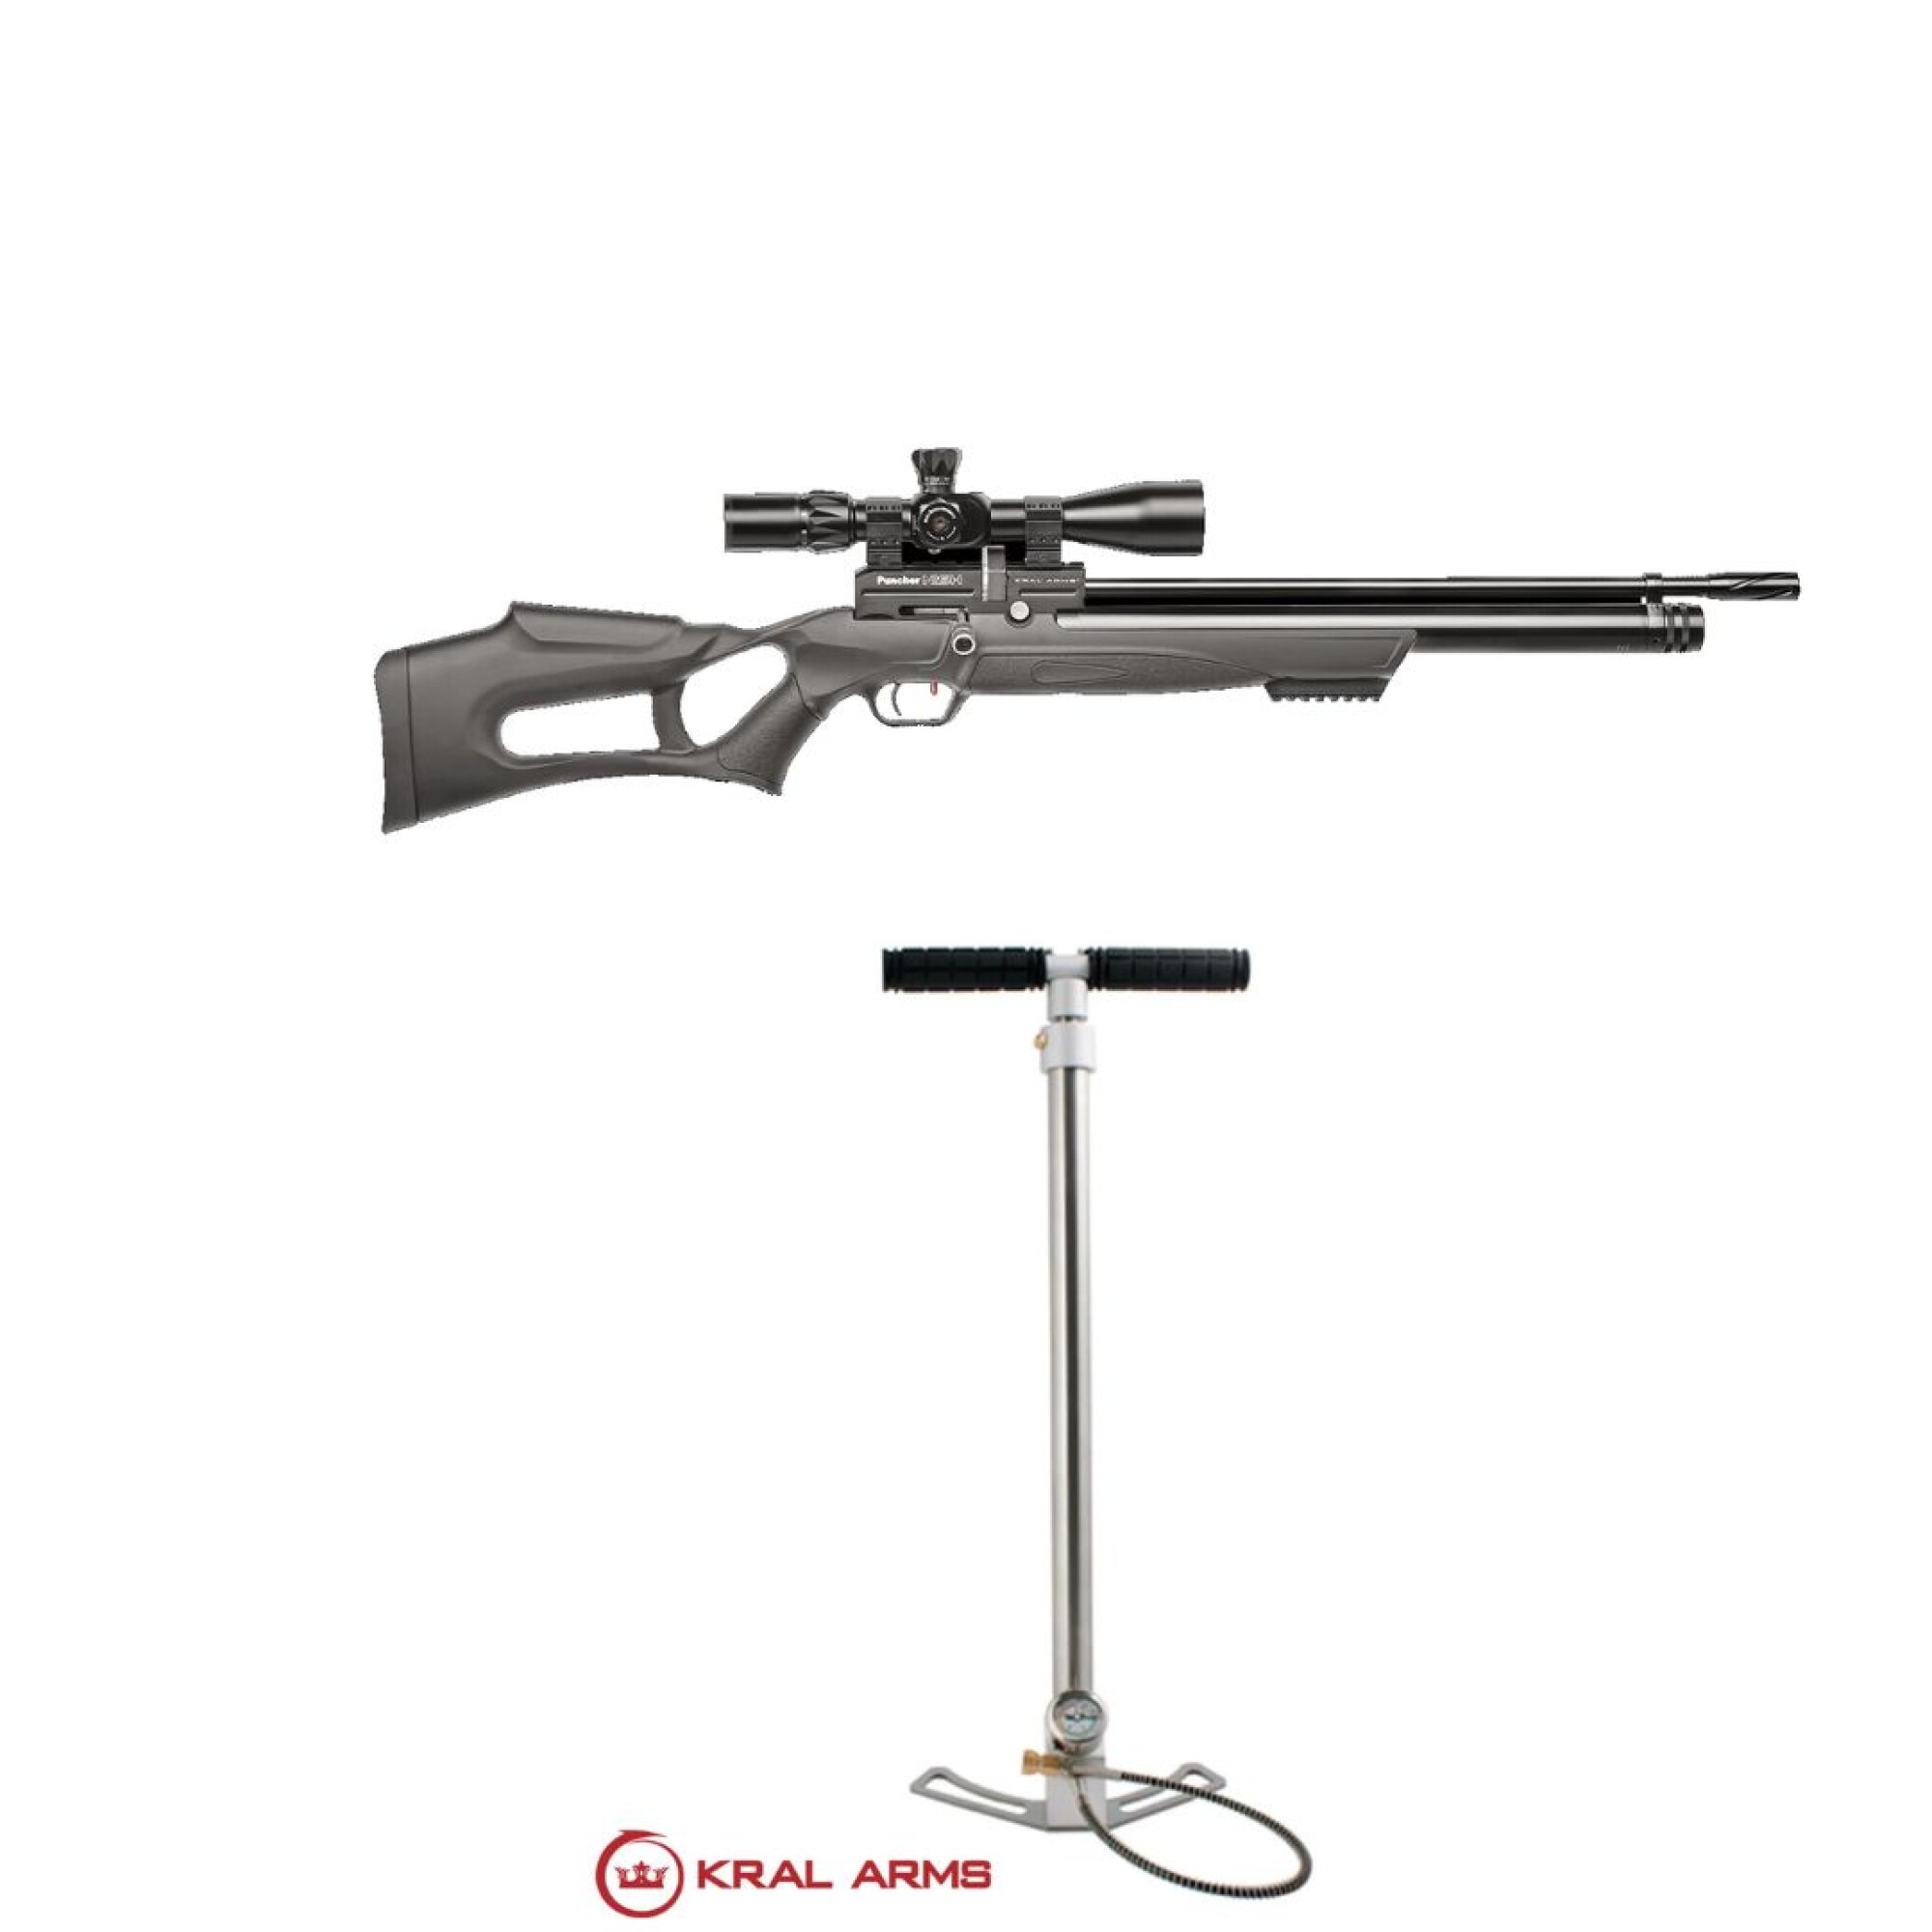 Armería Suiza Fundada en 1888 - Rifle aire comprimido Kral PUNCHER MEGA PCP  C.5.5 📌️Características: ☑️ Potencia: 950 FPS (con JSB 18,13 gr.) ☑️  Potencia regulable: Si ☑️ Sistema de tiro: Tiro